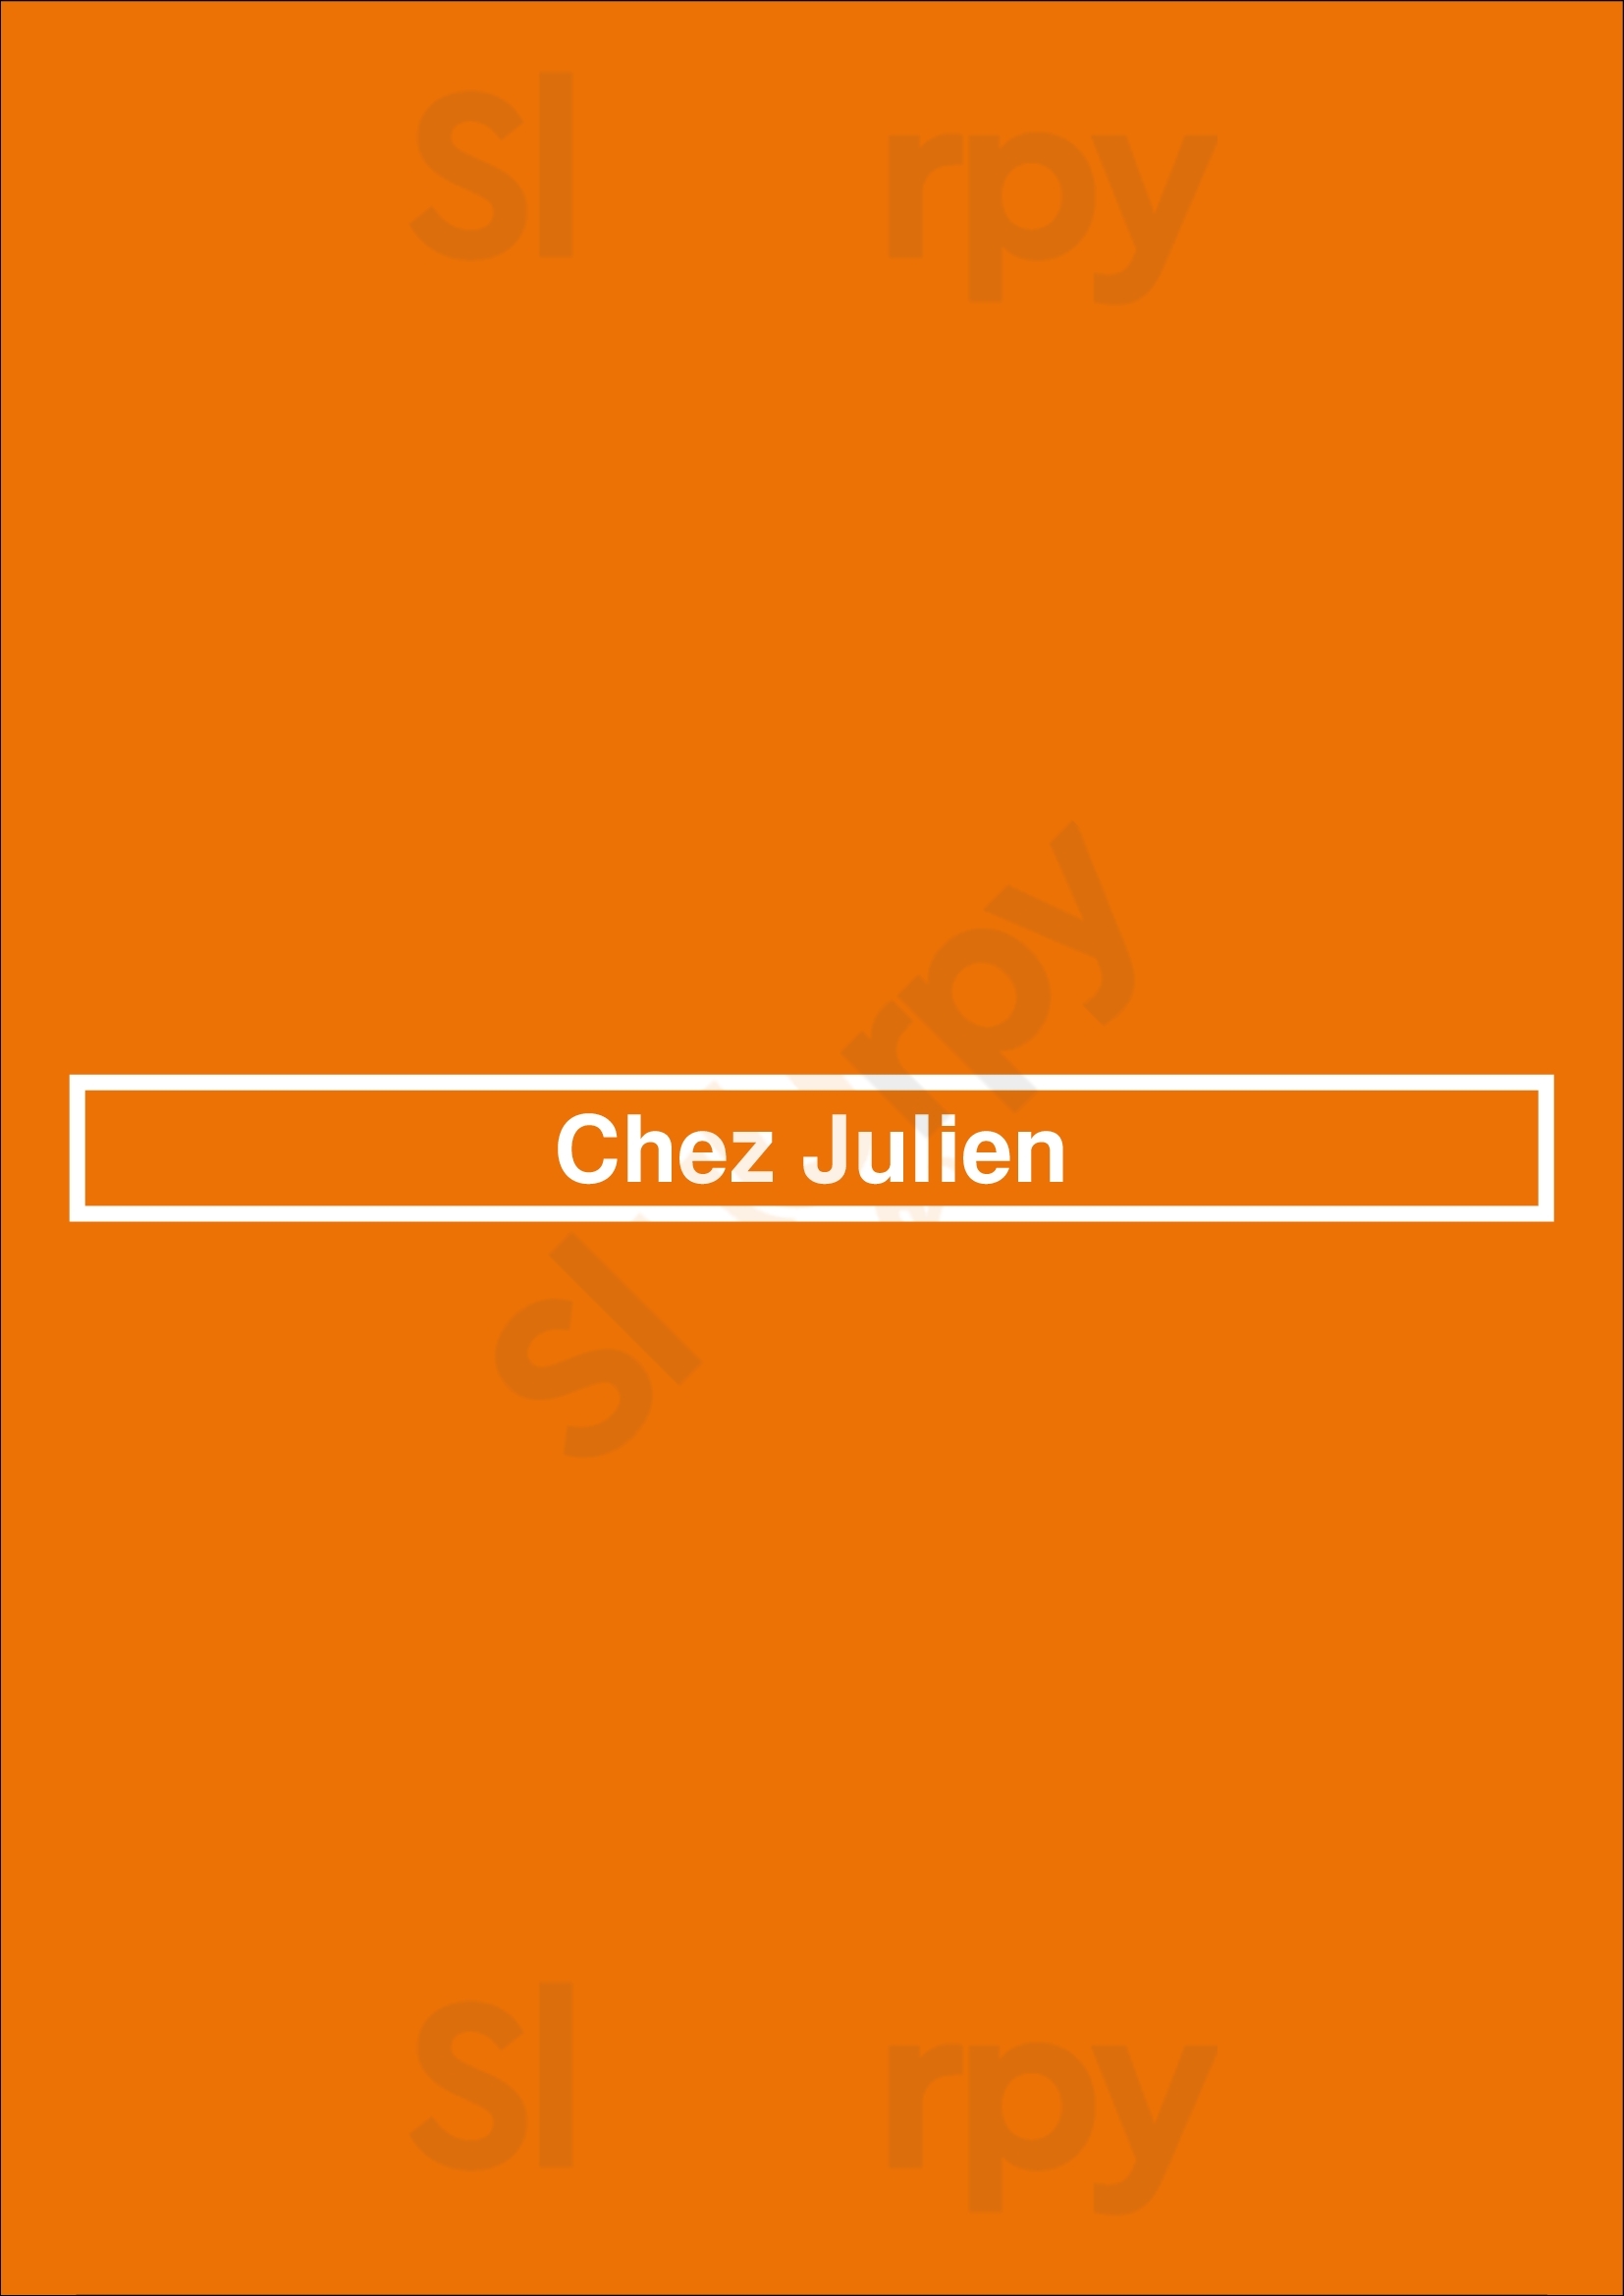 Chez Julien Paris Menu - 1